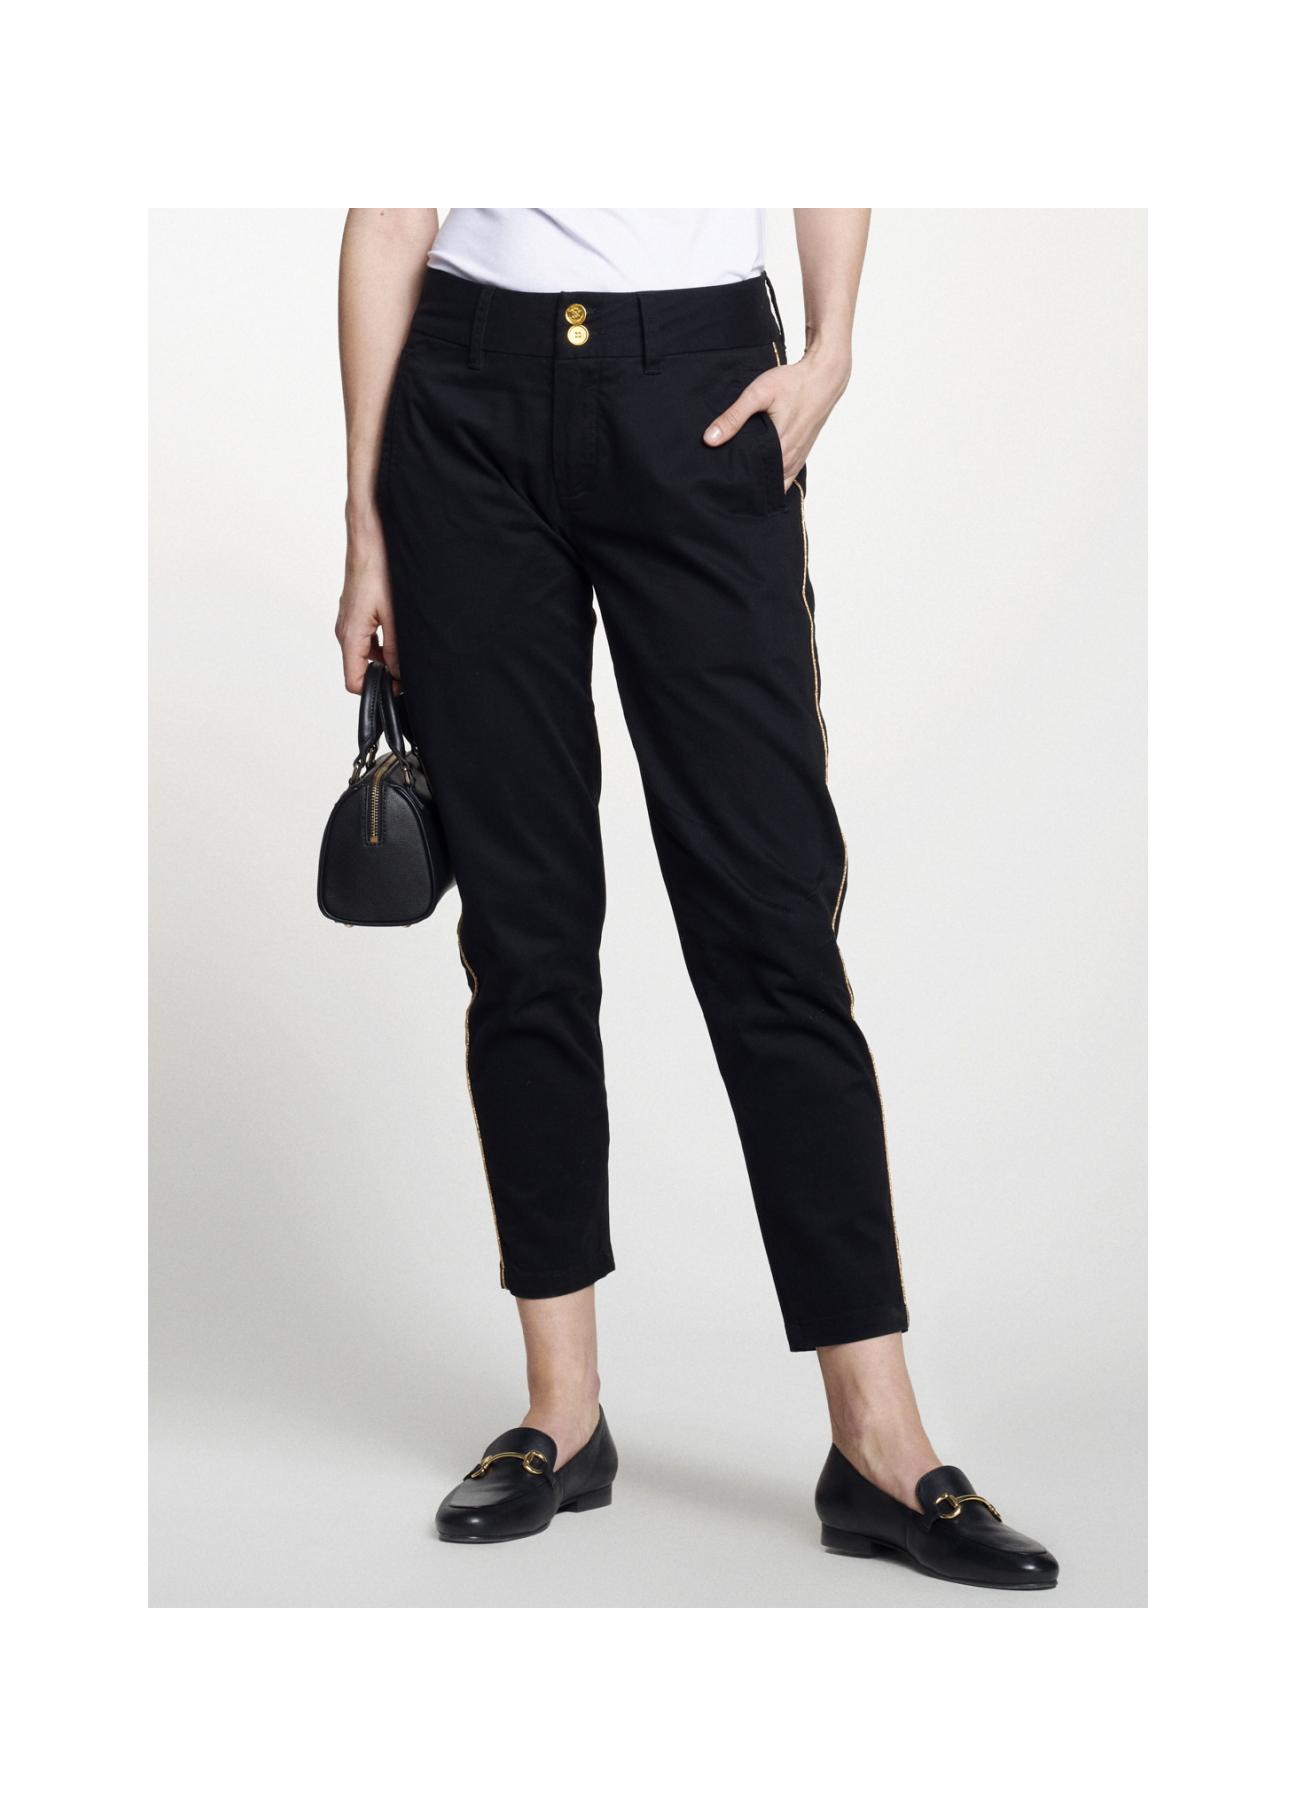 Czarne spodnie damskie z lampasem SPODT-0056-99(W21)-01